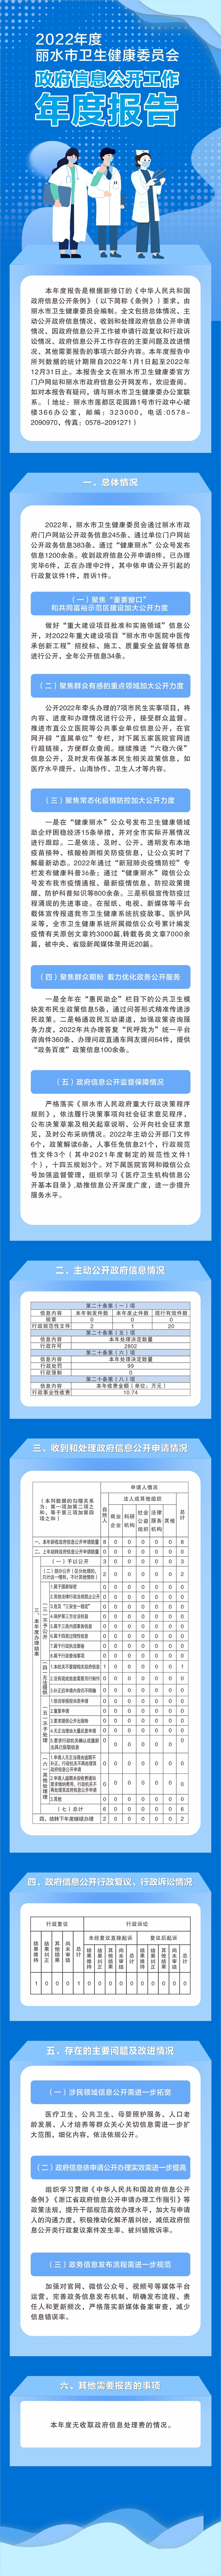 2022年度丽水市卫生健康委员会政府信息公开工作年度报告.jpg